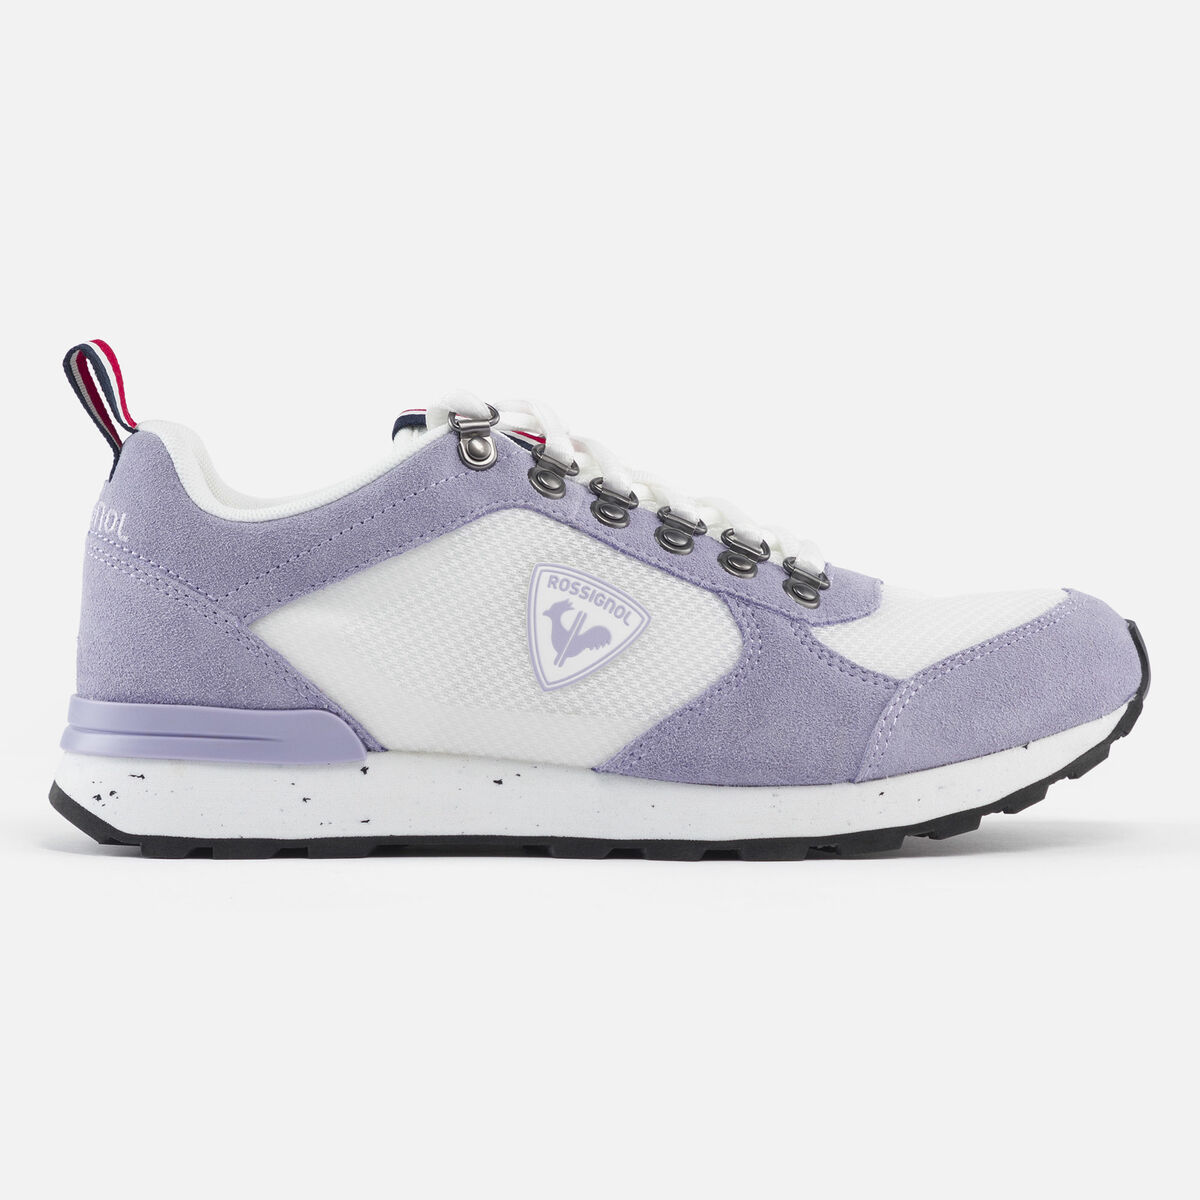 Rossignol Men's Heritage Special lavender sneakers Pink/Purple